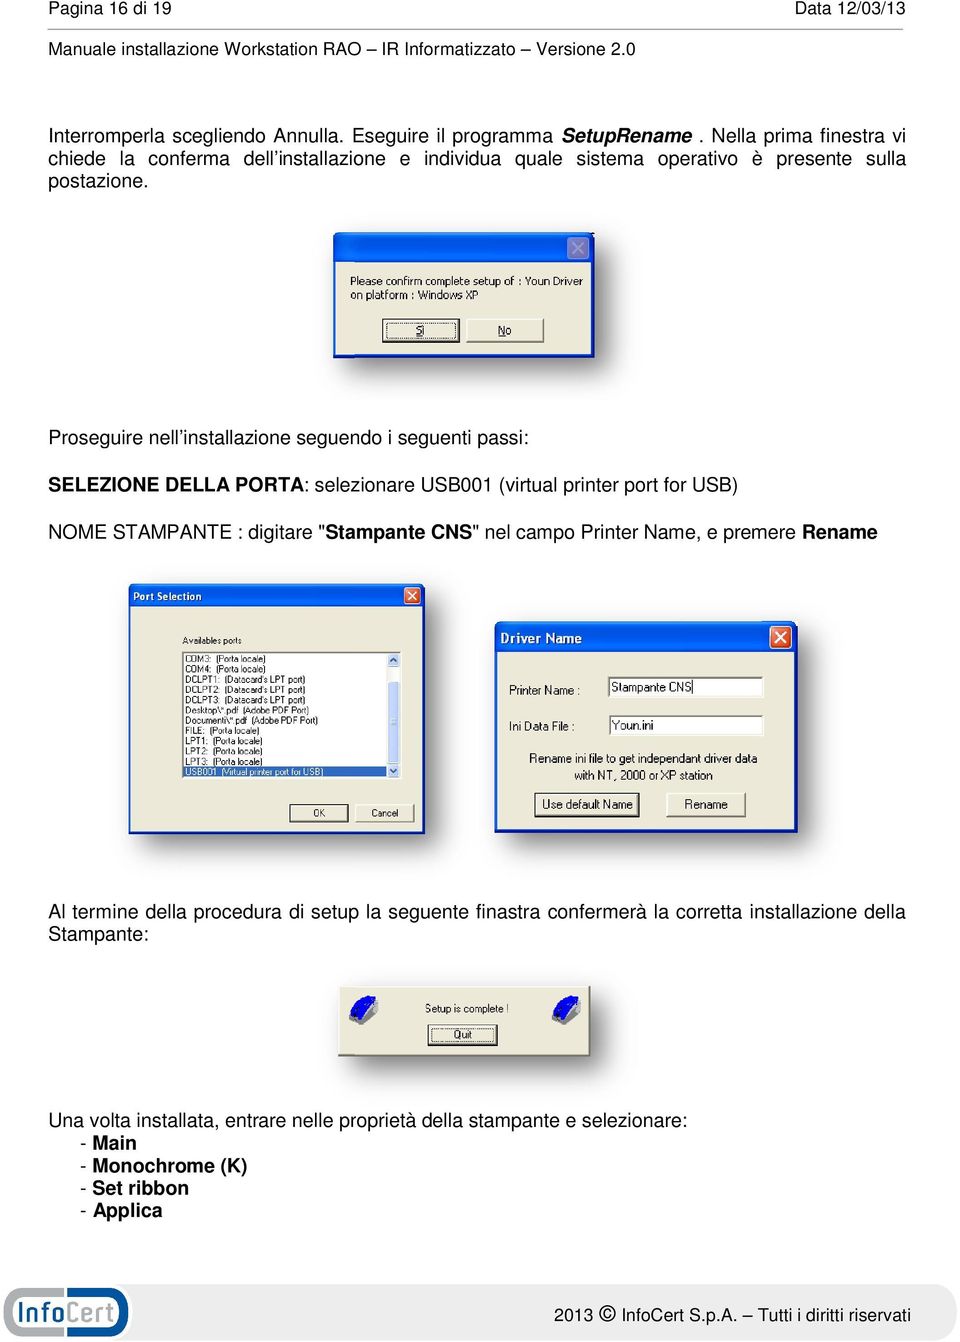 Proseguire nell installazione seguendo i seguenti passi: SELEZIONE DELLA PORTA: : selezionare USB001 (virtual printer port for USB) NOME STAMPANTE : digitare